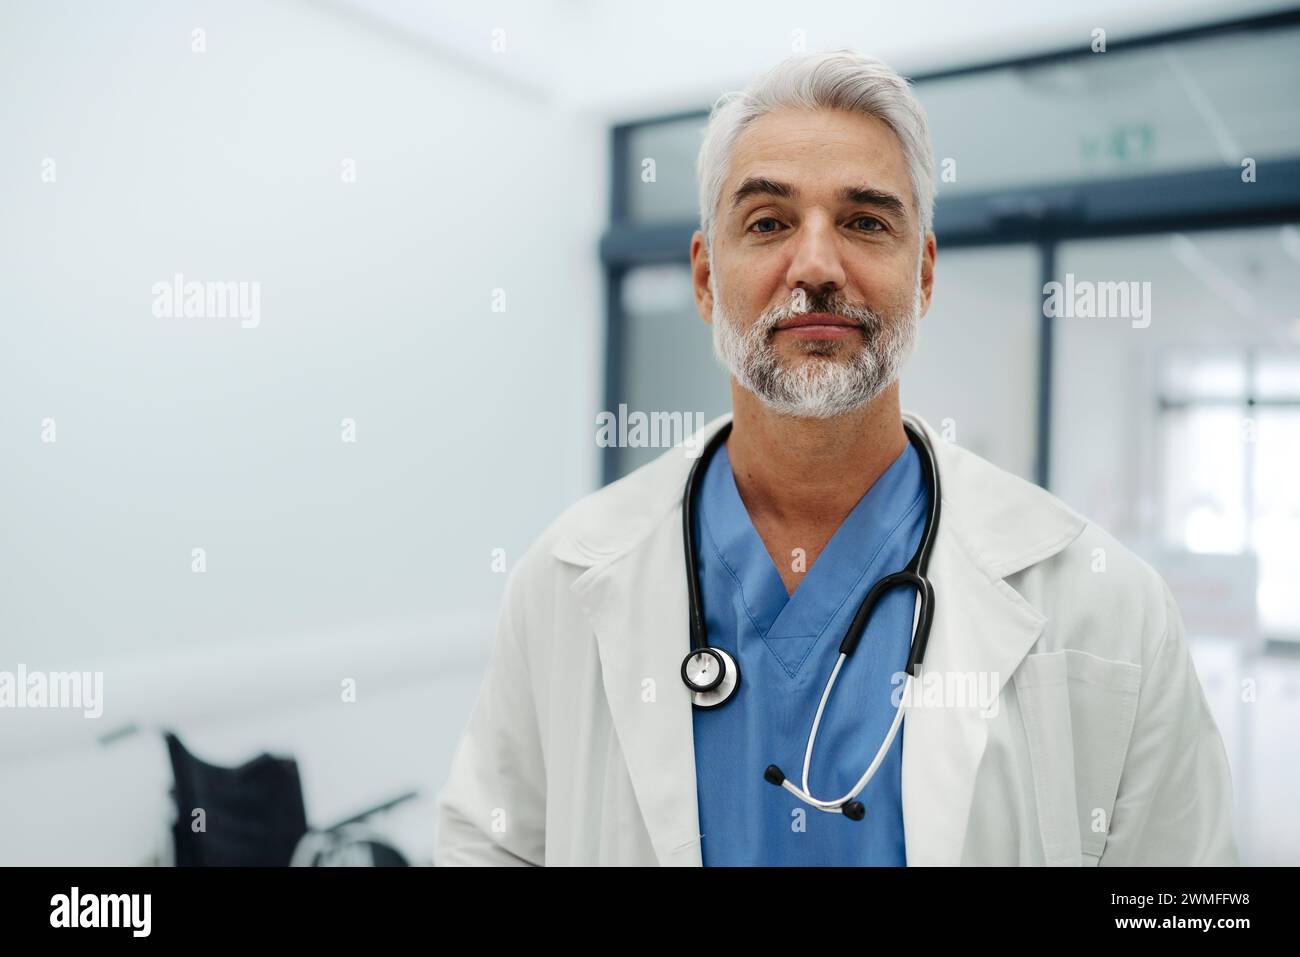 Porträt eines selbstbewussten reiferen Arztes, der im Krankenhauskorridor steht. Hübscher Arzt mit grauen Haaren, weißem Mantel, Peelings, Stethoskop um den Hals Stockfoto